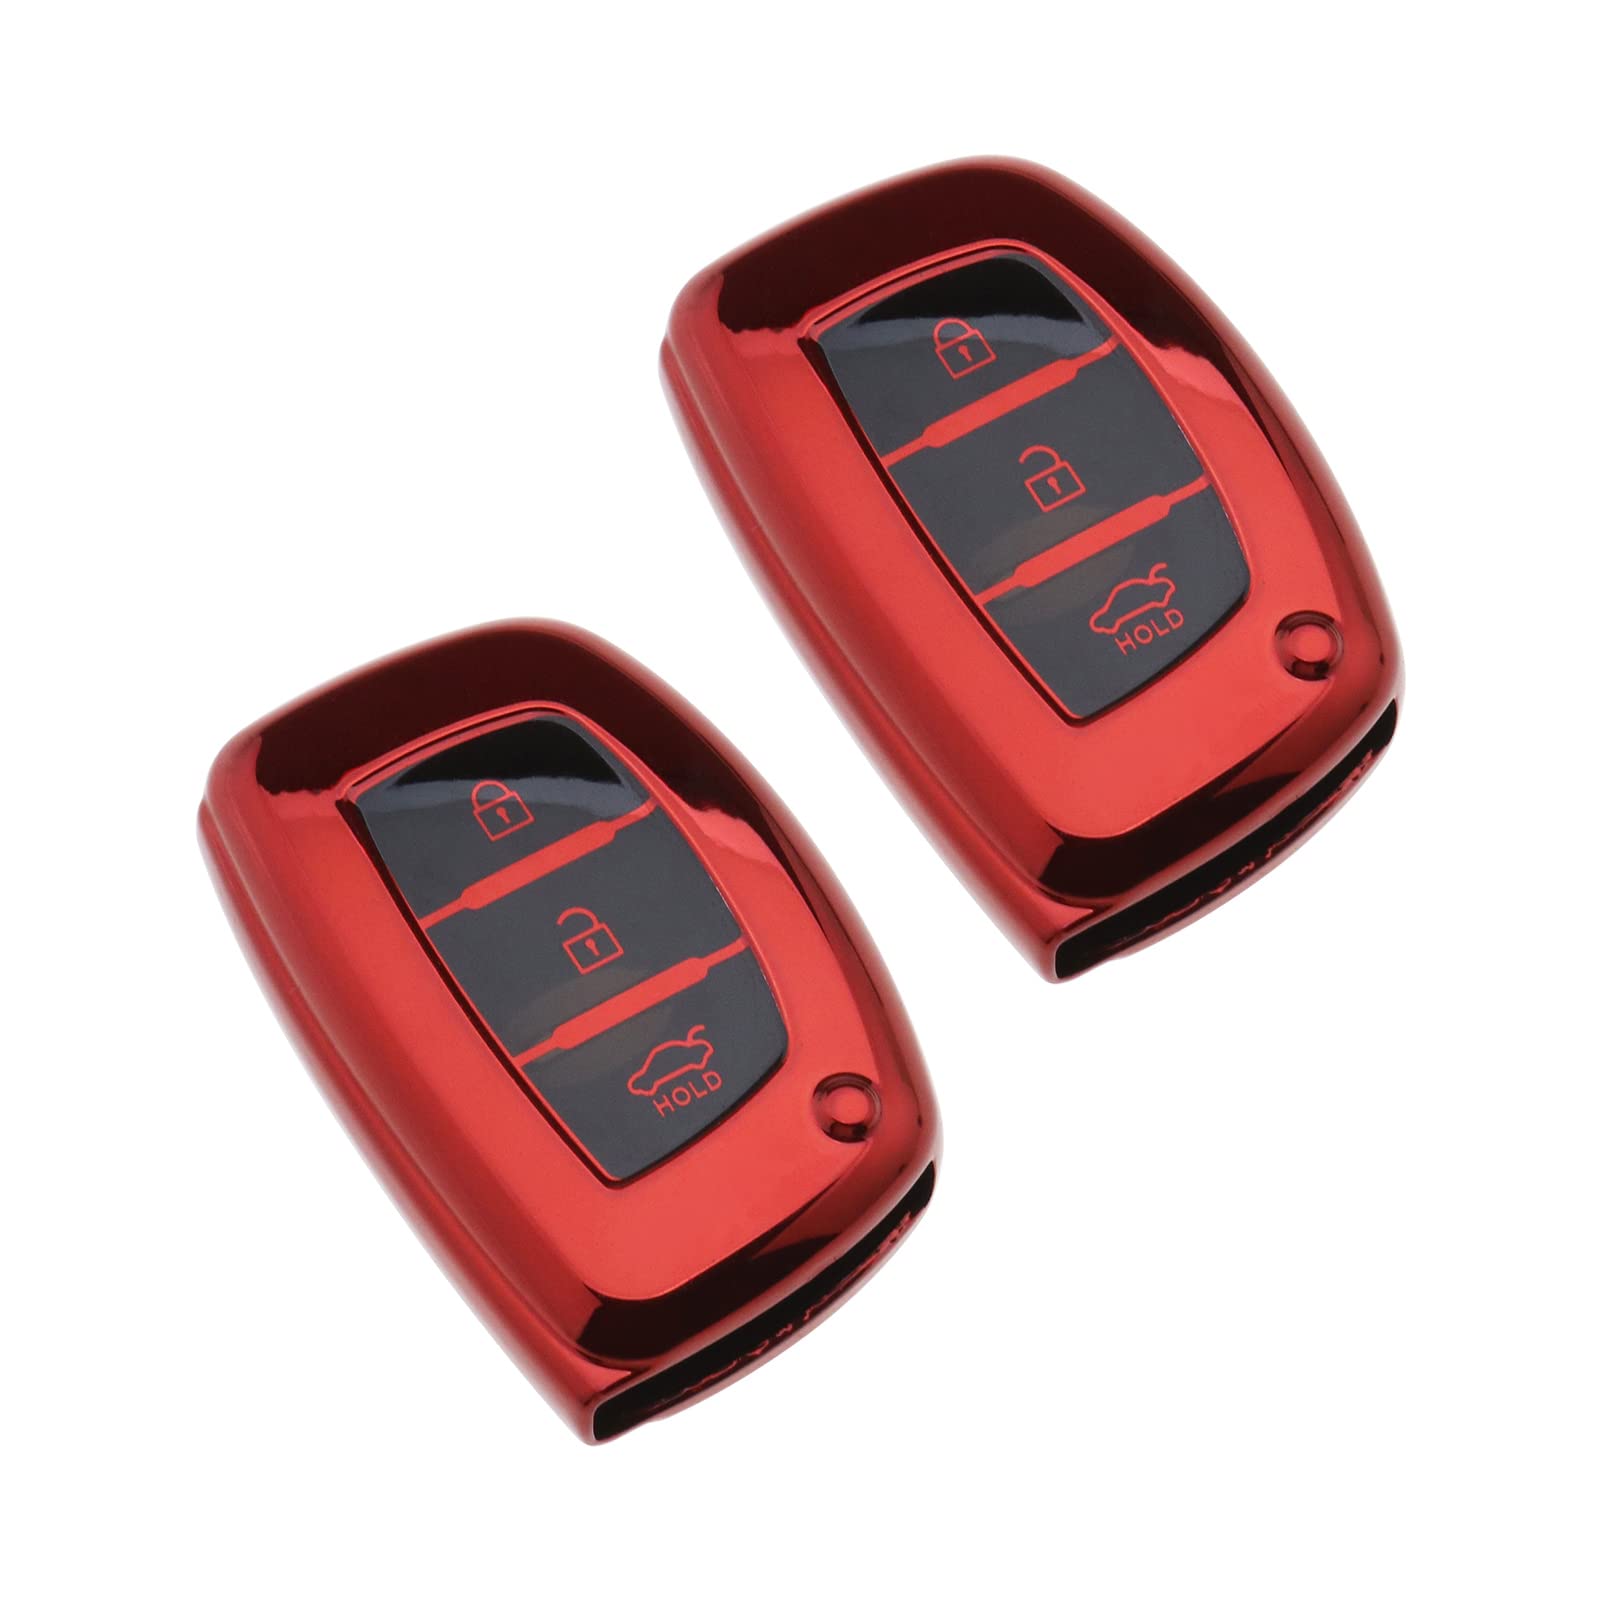 YINETTECH 2 x Autoschlüsselhülle Finish TPU 3 Tasten Autoschlüssel Hülle Fall Rot glänzend Kompatibel mit Hyundai Kia IX20 / IX30 / IX35 / IX45 / IX55 / I40 / Tucson/Santa Fe von YINETTECH